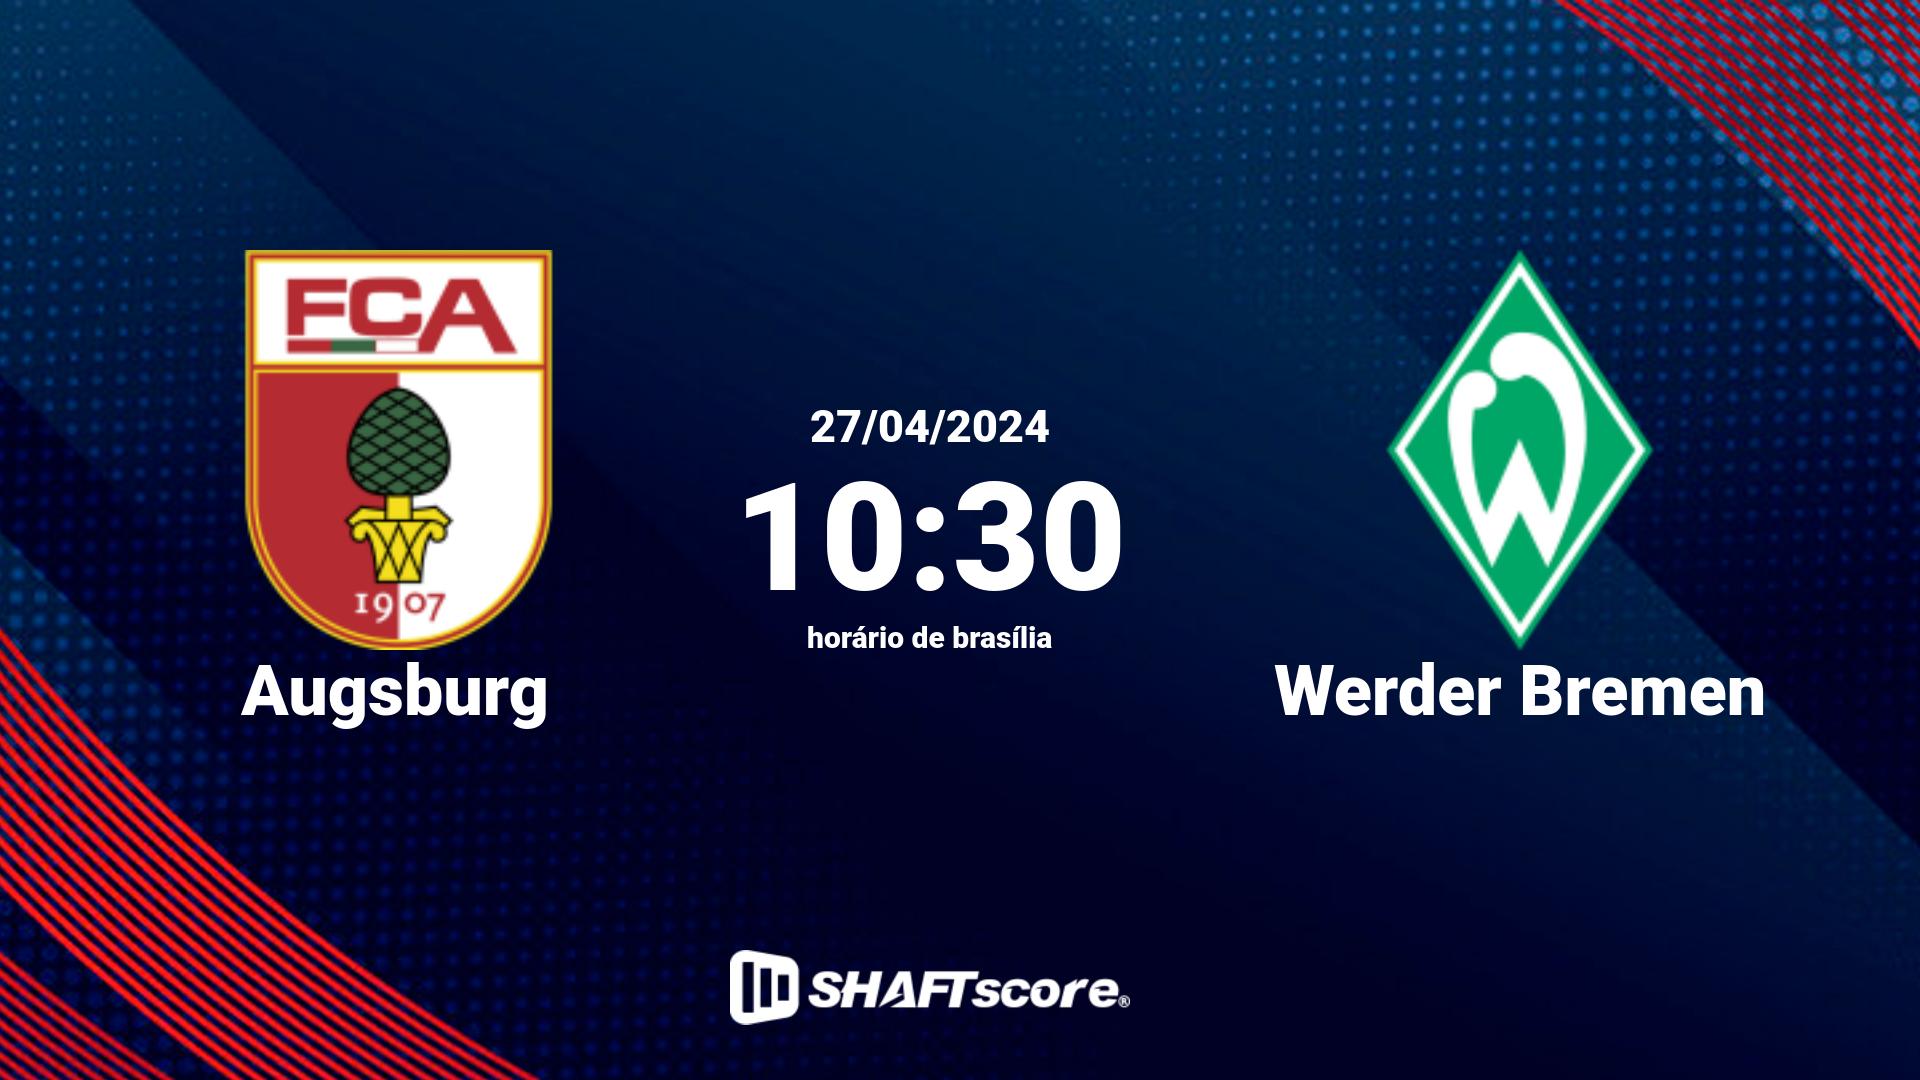 Estatísticas do jogo Augsburg vs Werder Bremen 27.04 10:30